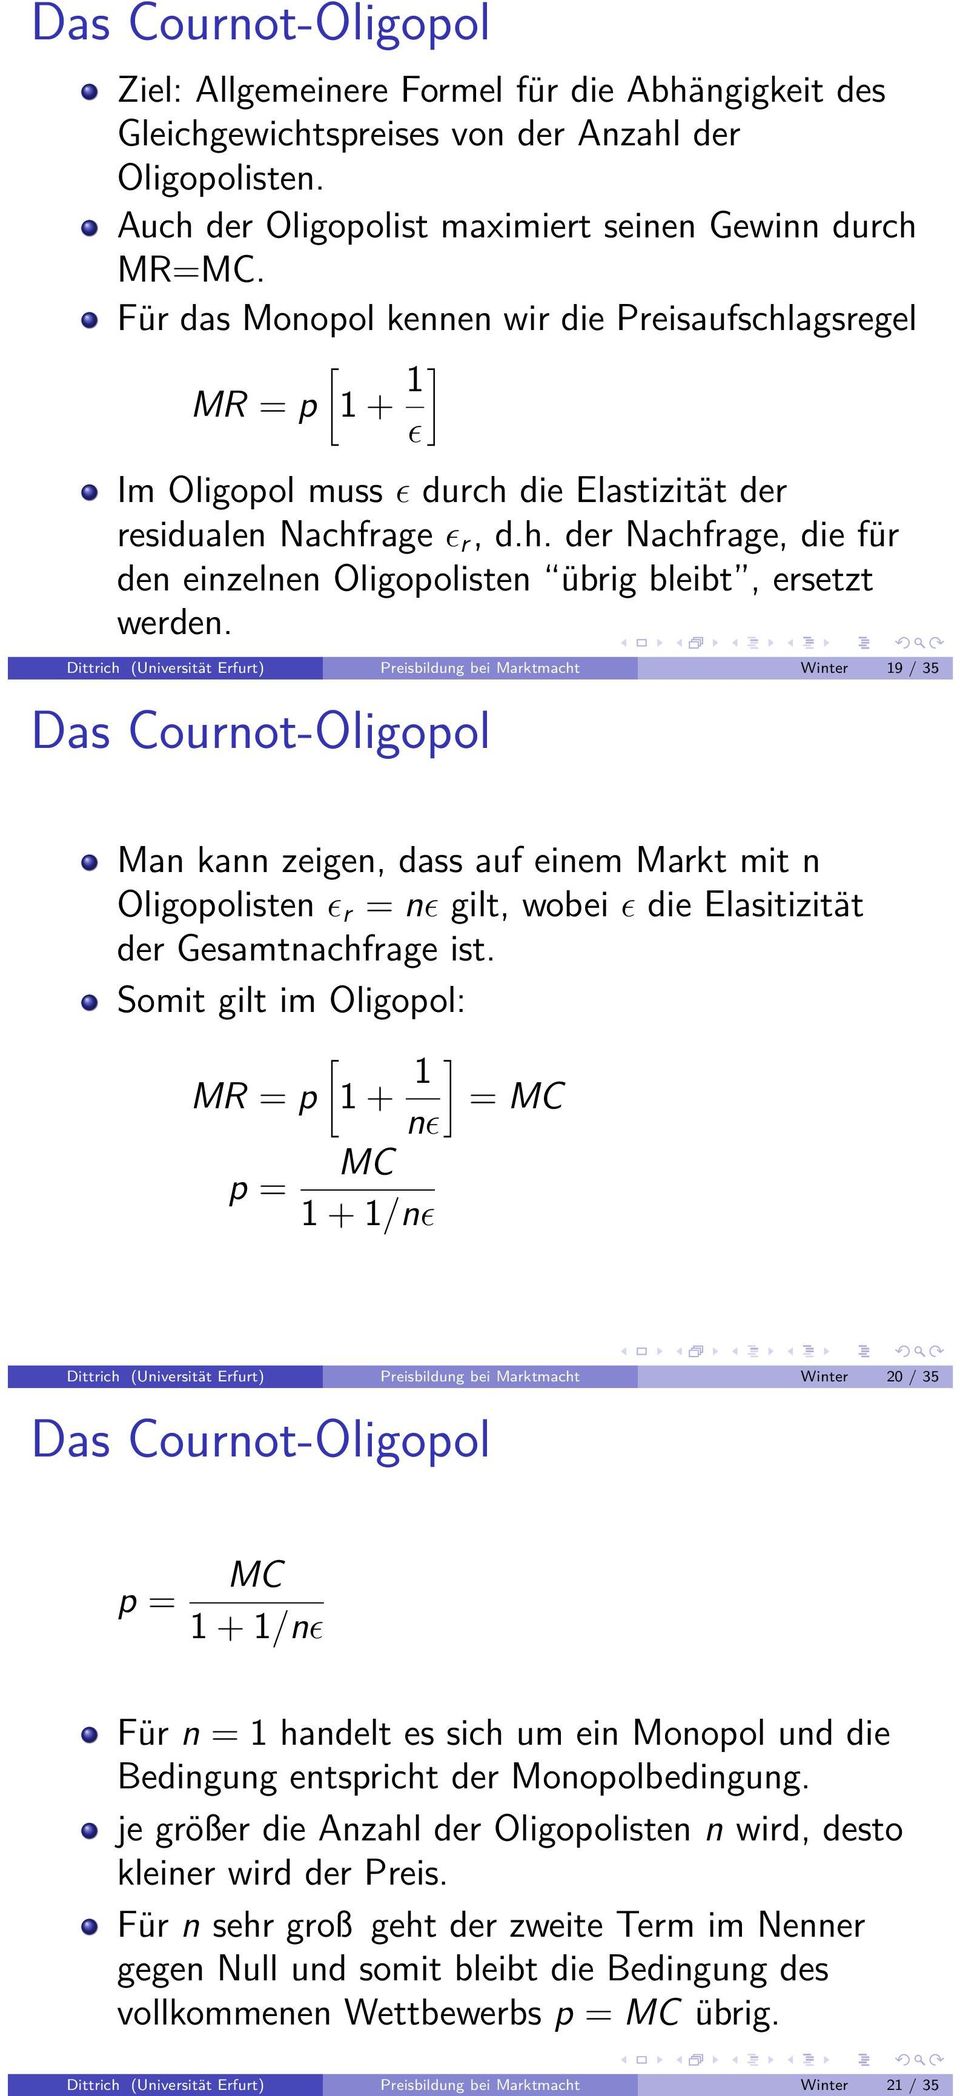 Dittrich (Universität Erfurt) Preisbildung bei Marktmacht Winter 19 / 35 Das Cournot-Oligopol Man kann zeigen, dass auf einem Markt mit n Oligopolisten ɛ r = nɛ gilt, wobei ɛ die Elasitizität der